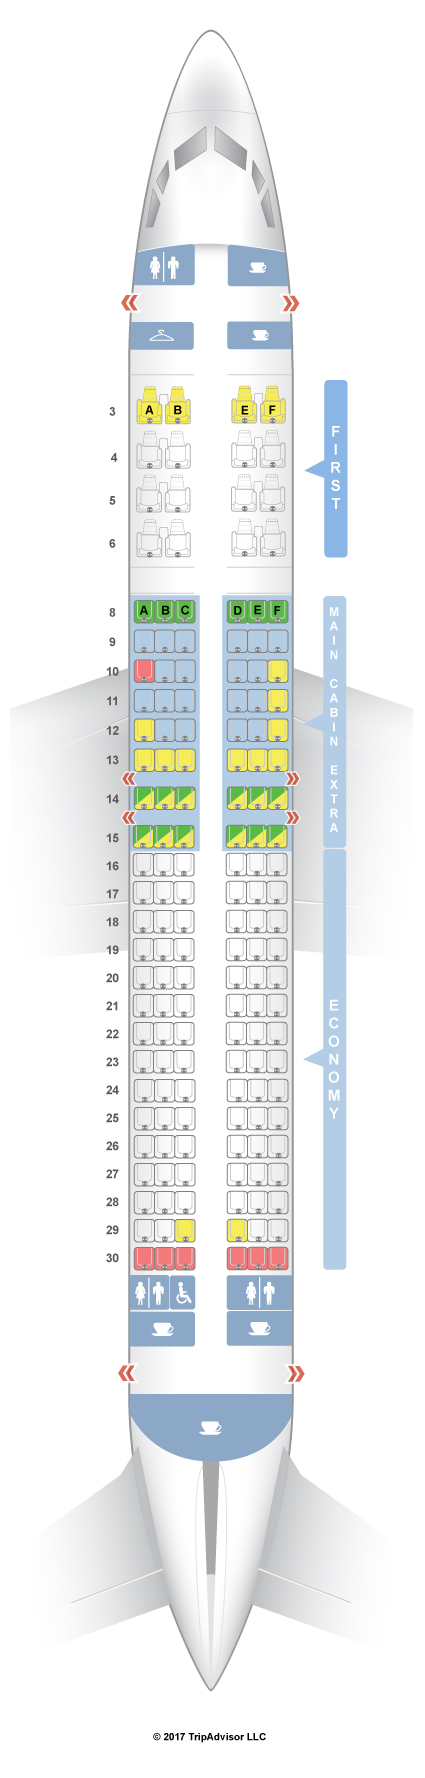 Delta Flight 2215 Seating Chart